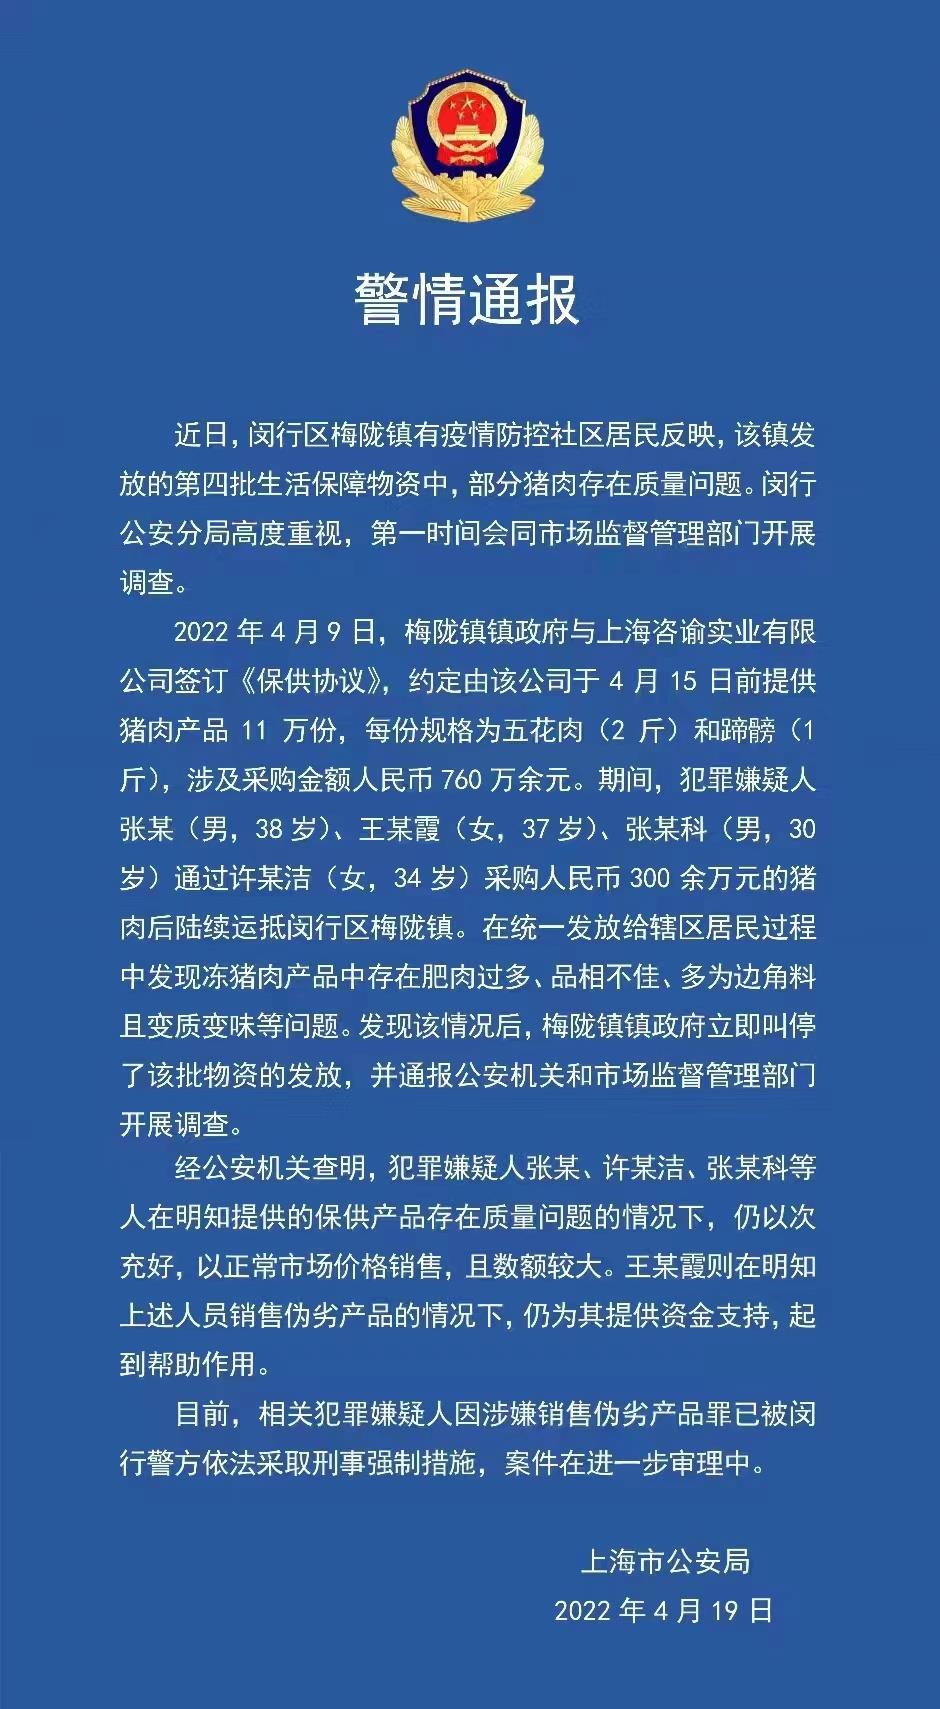 上海闵行区猪肉问题系明知劣质以次充好 犯罪嫌疑人被警方查处